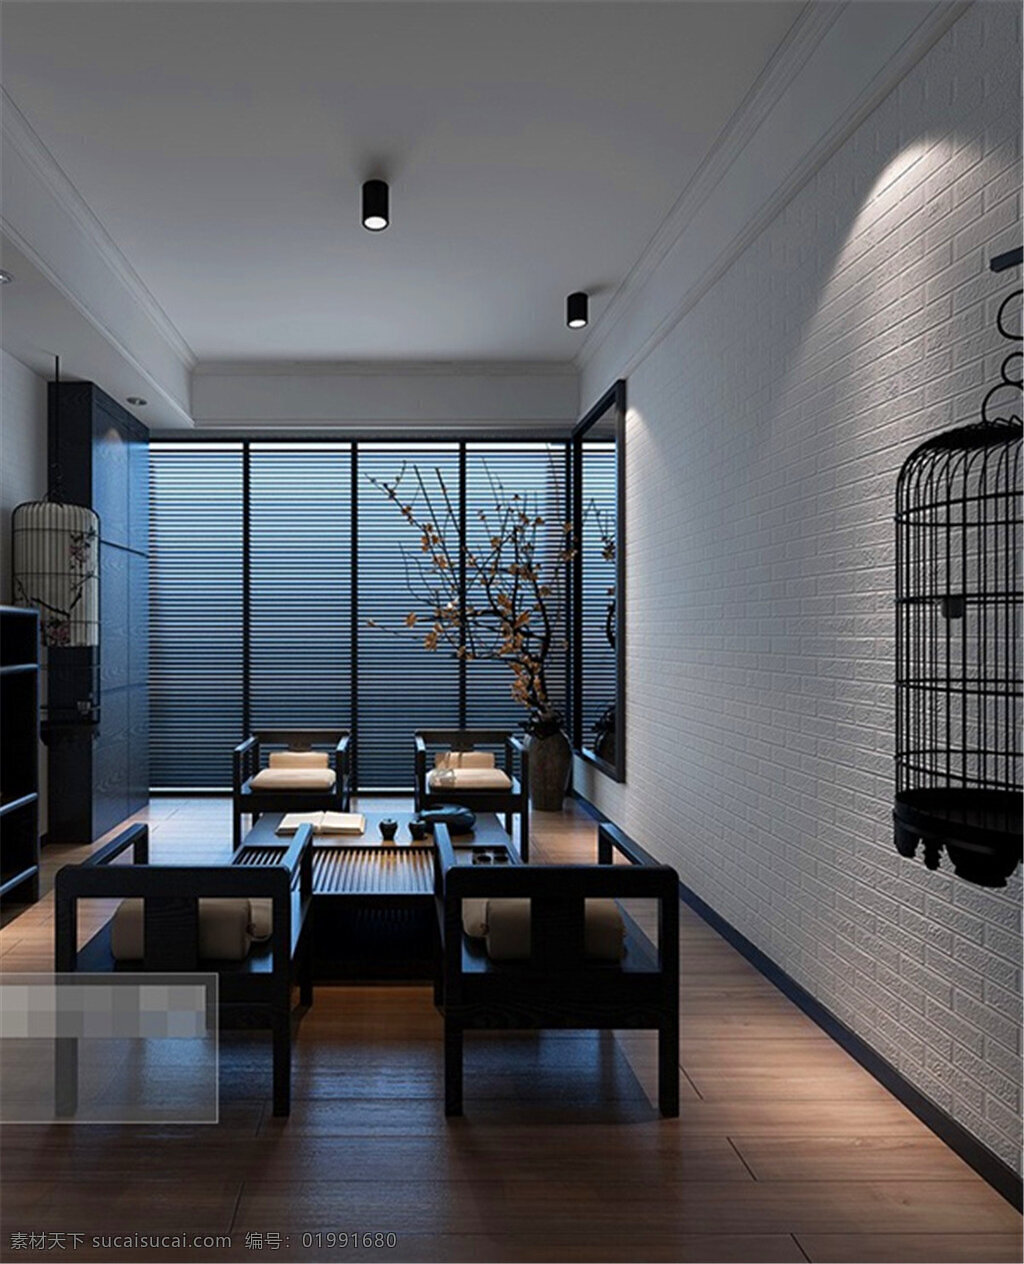 现代 中式 会客厅 模型 家居 家居生活 室内设计 装修 室内 家具 装修设计 环境设计 效果图 max 3d 客厅 茶几 落地窗